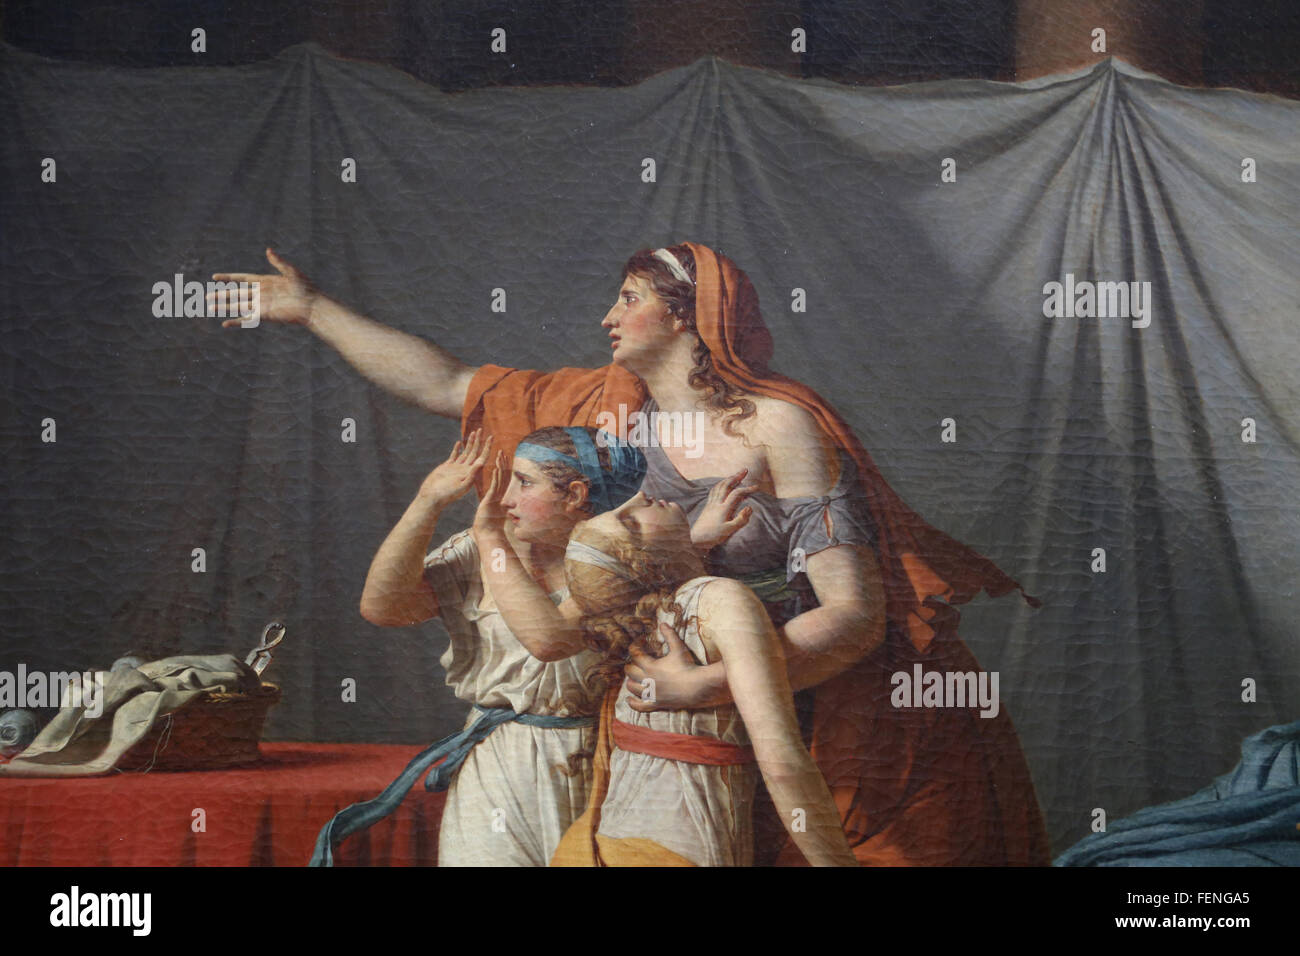 Il Lictors portare a Bruto i corpi dei suoi figli, 1789. Da Jacques-Louis David. Dettaglio della madre e le sue figlie. Louvre. Foto Stock